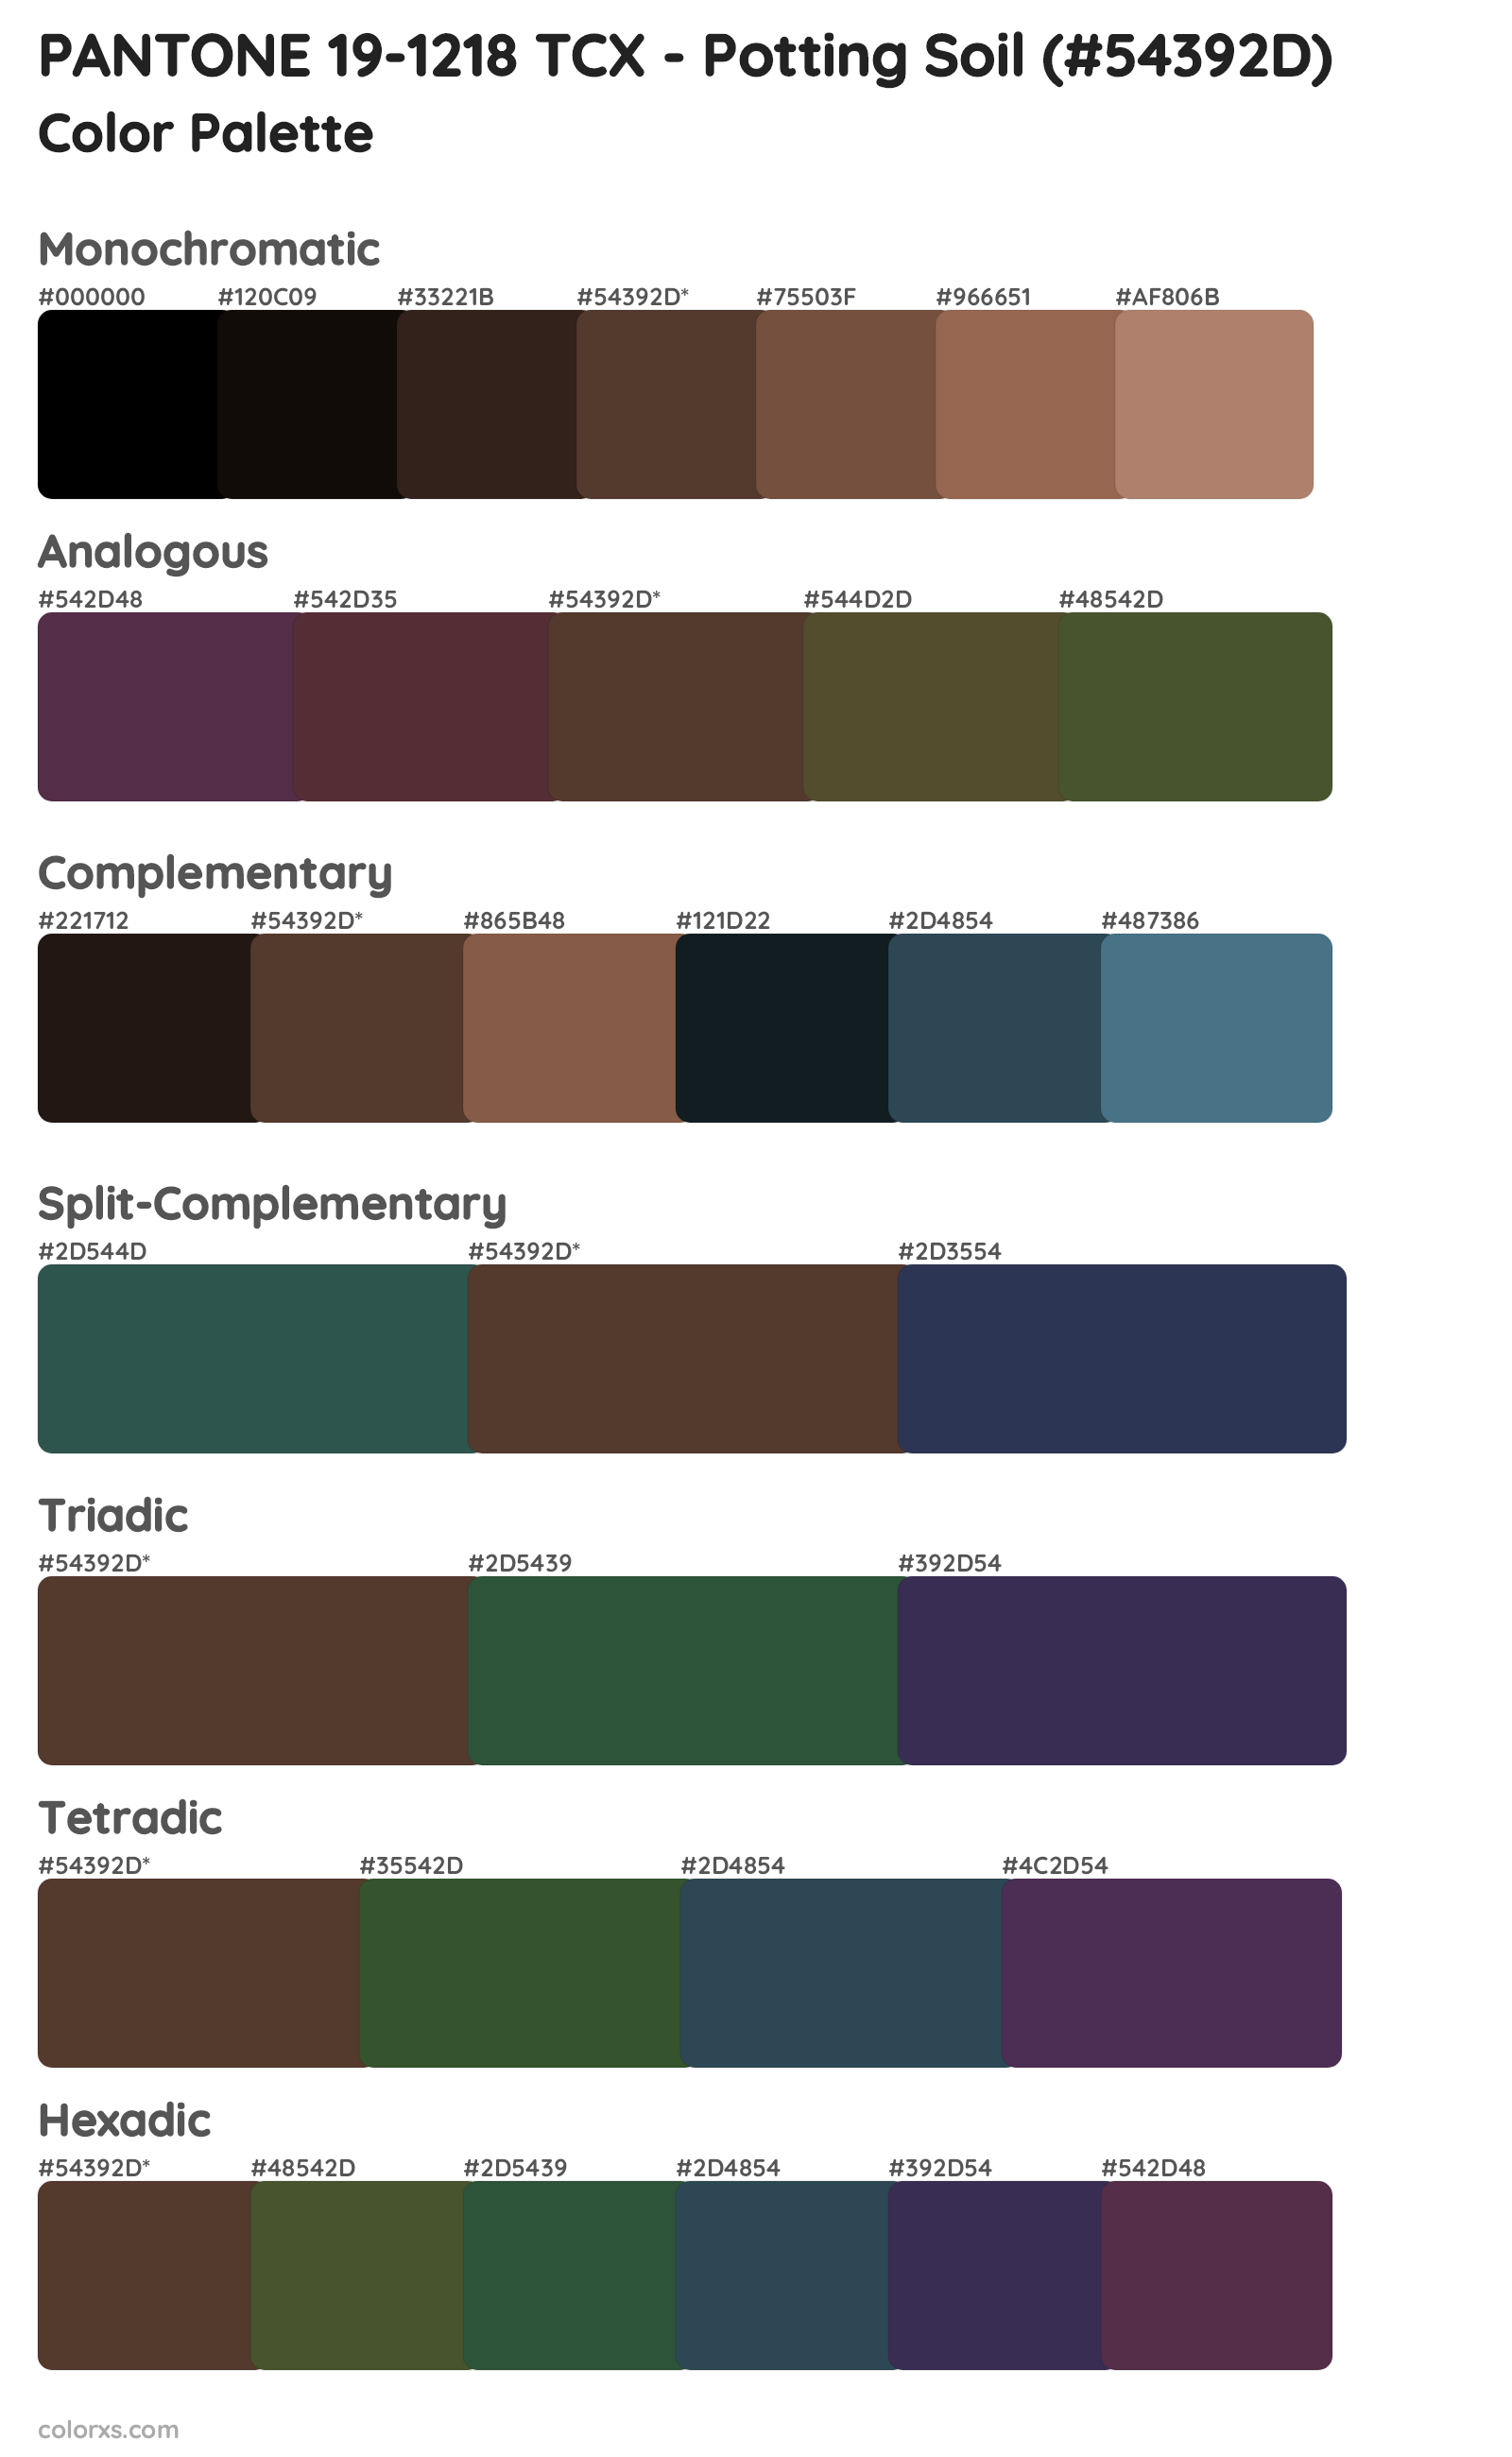 PANTONE 19-1218 TCX - Potting Soil Color Scheme Palettes